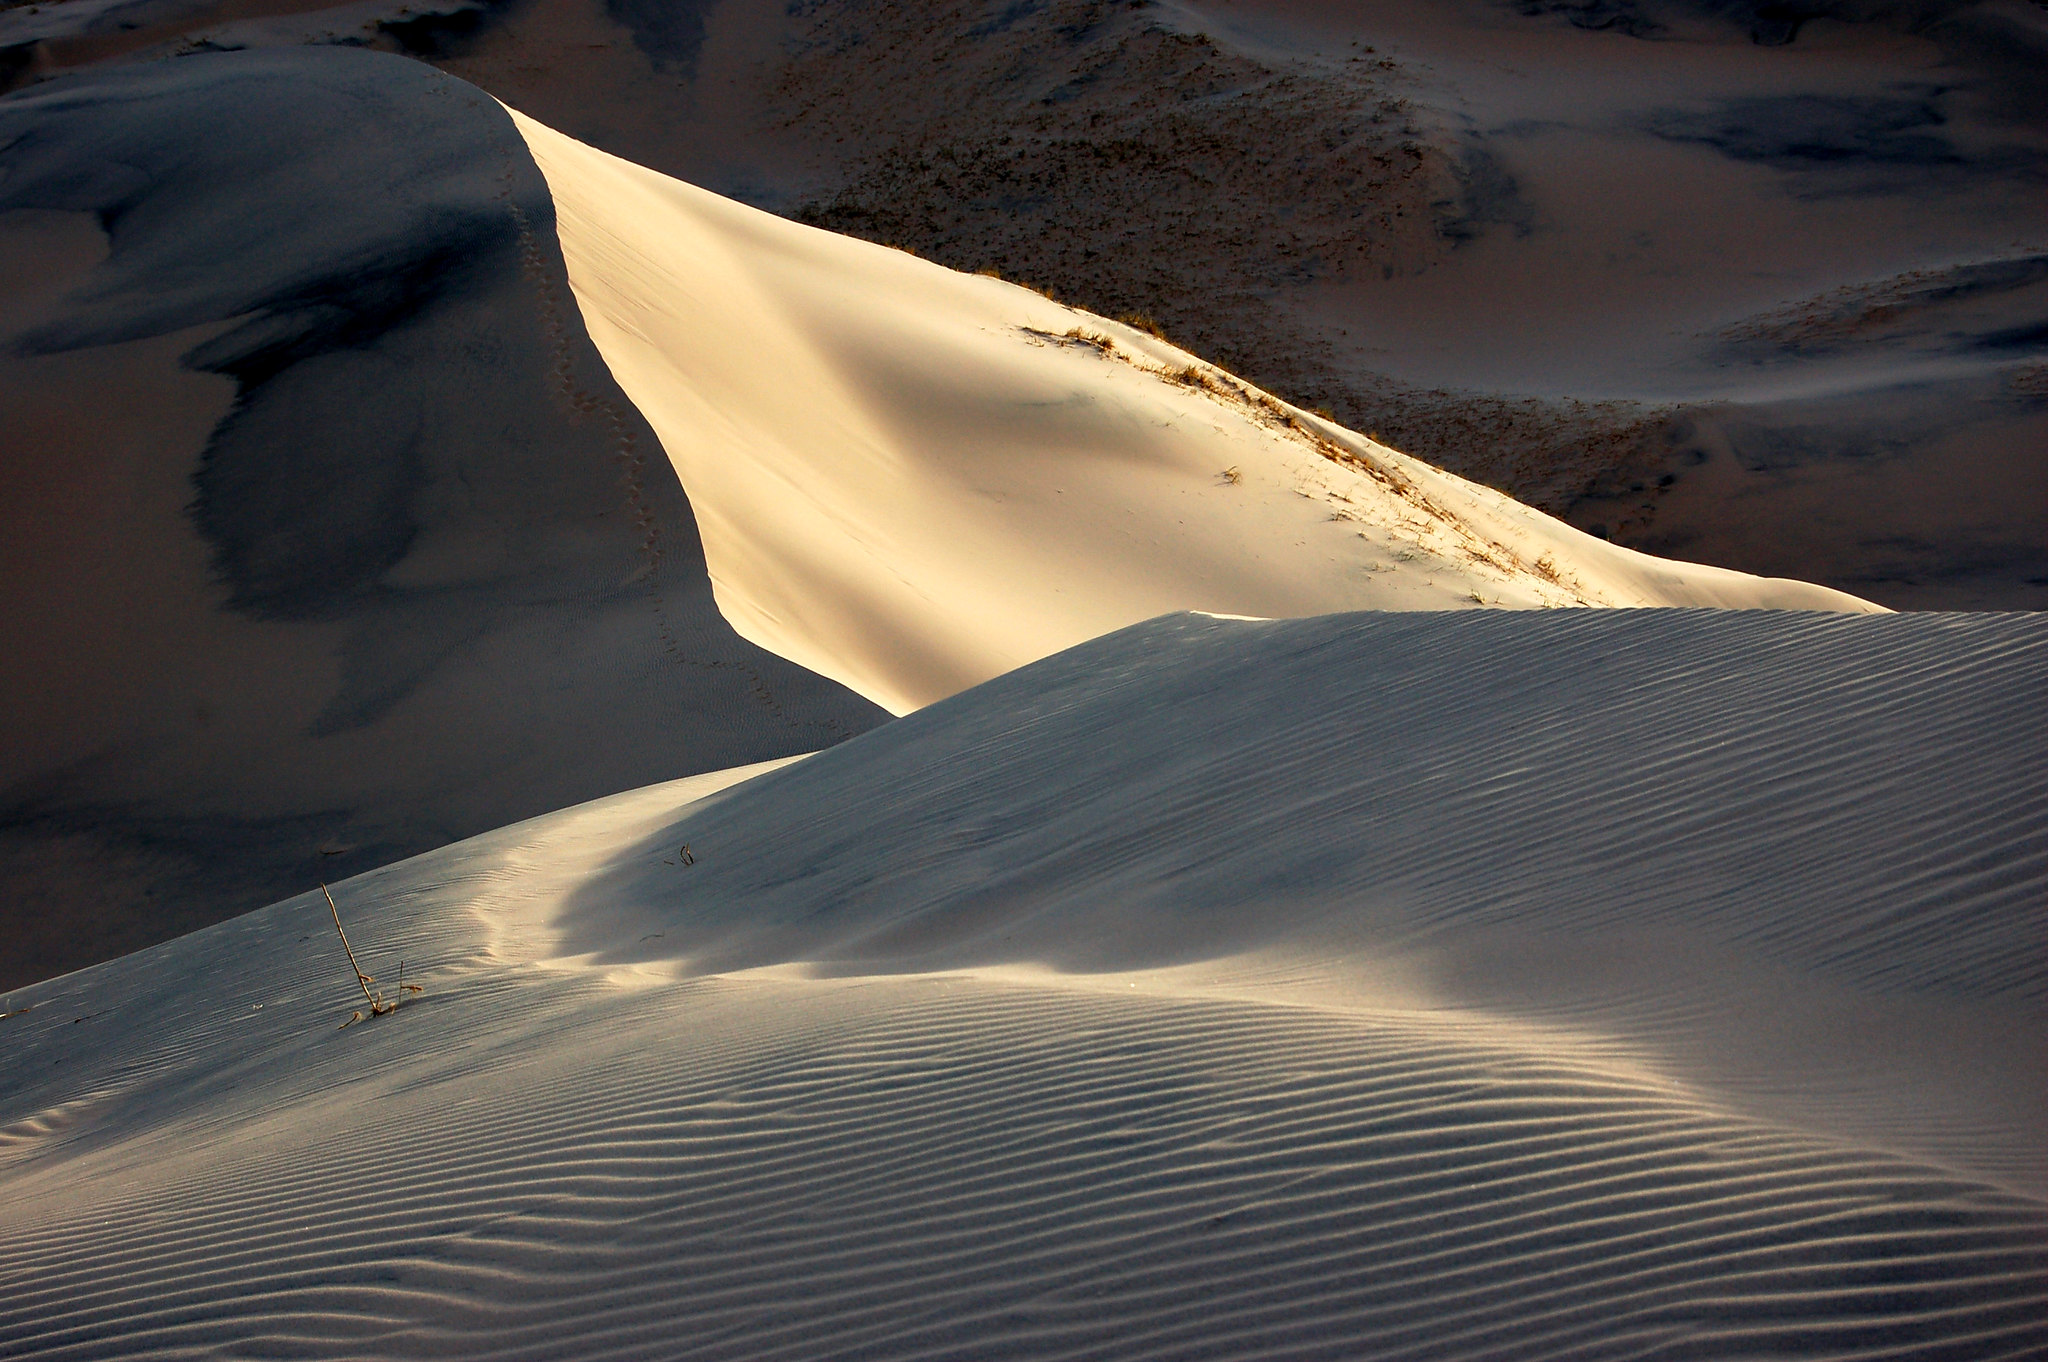 kelso-dunes-mojave-national-preserve-photo-by-matt-artz.jpg